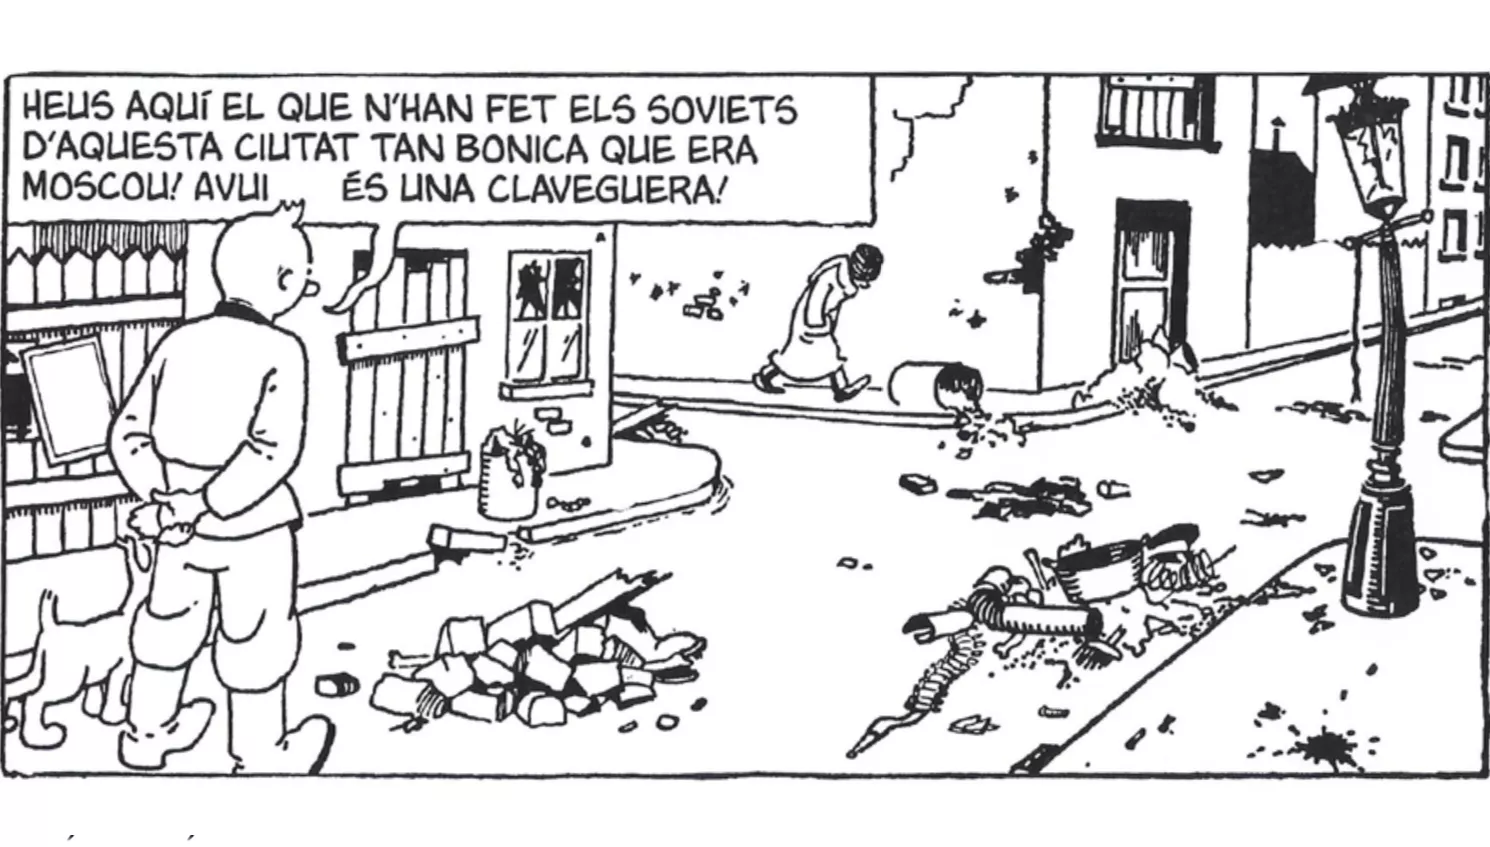 'Tintín al país dels soviets' és el primer volum de 'Les aventures de Tintín', la sèrie de còmics d'Hergé